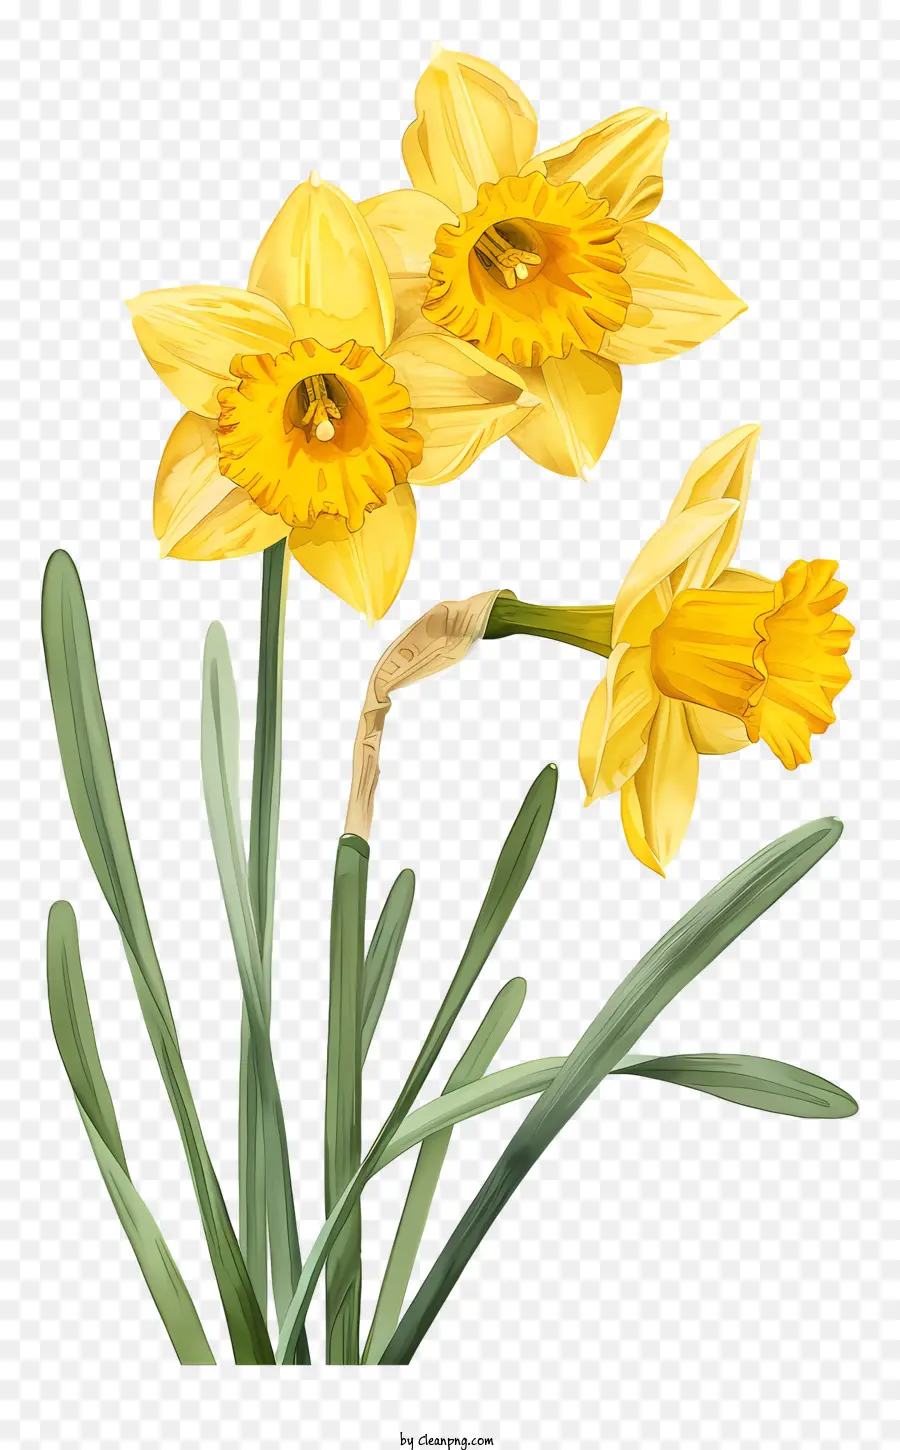 hoa mùa xuân - Daffodils màu vàng trong bình trên nền đen